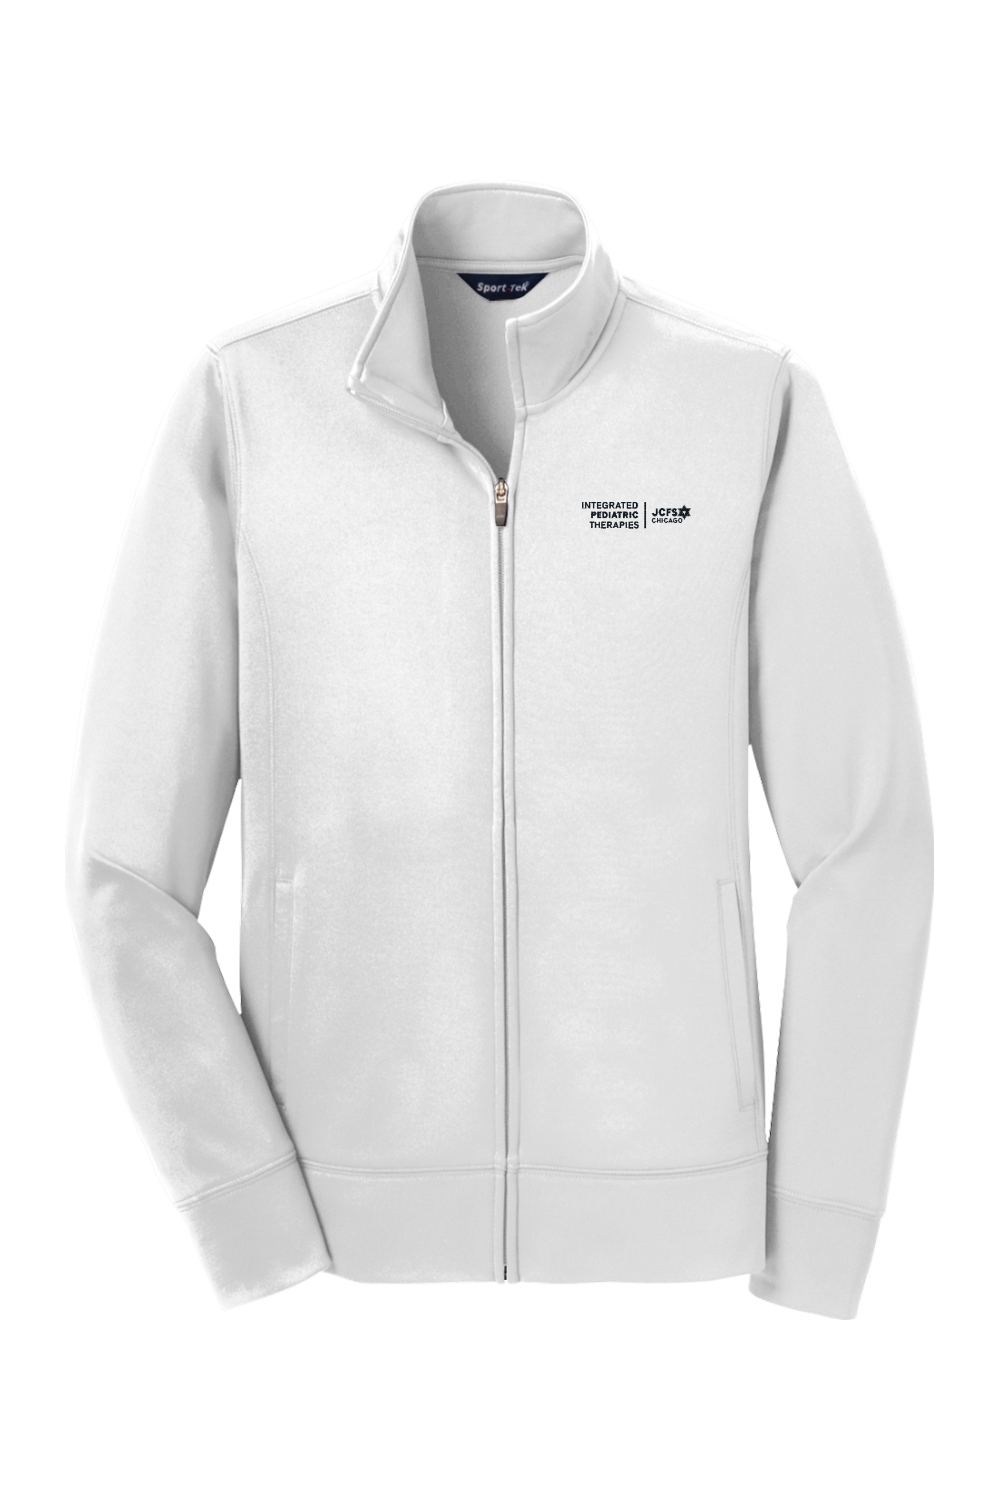 Sport-Tek Ladies Sport-Wick Fleece Full-Zip Jacket